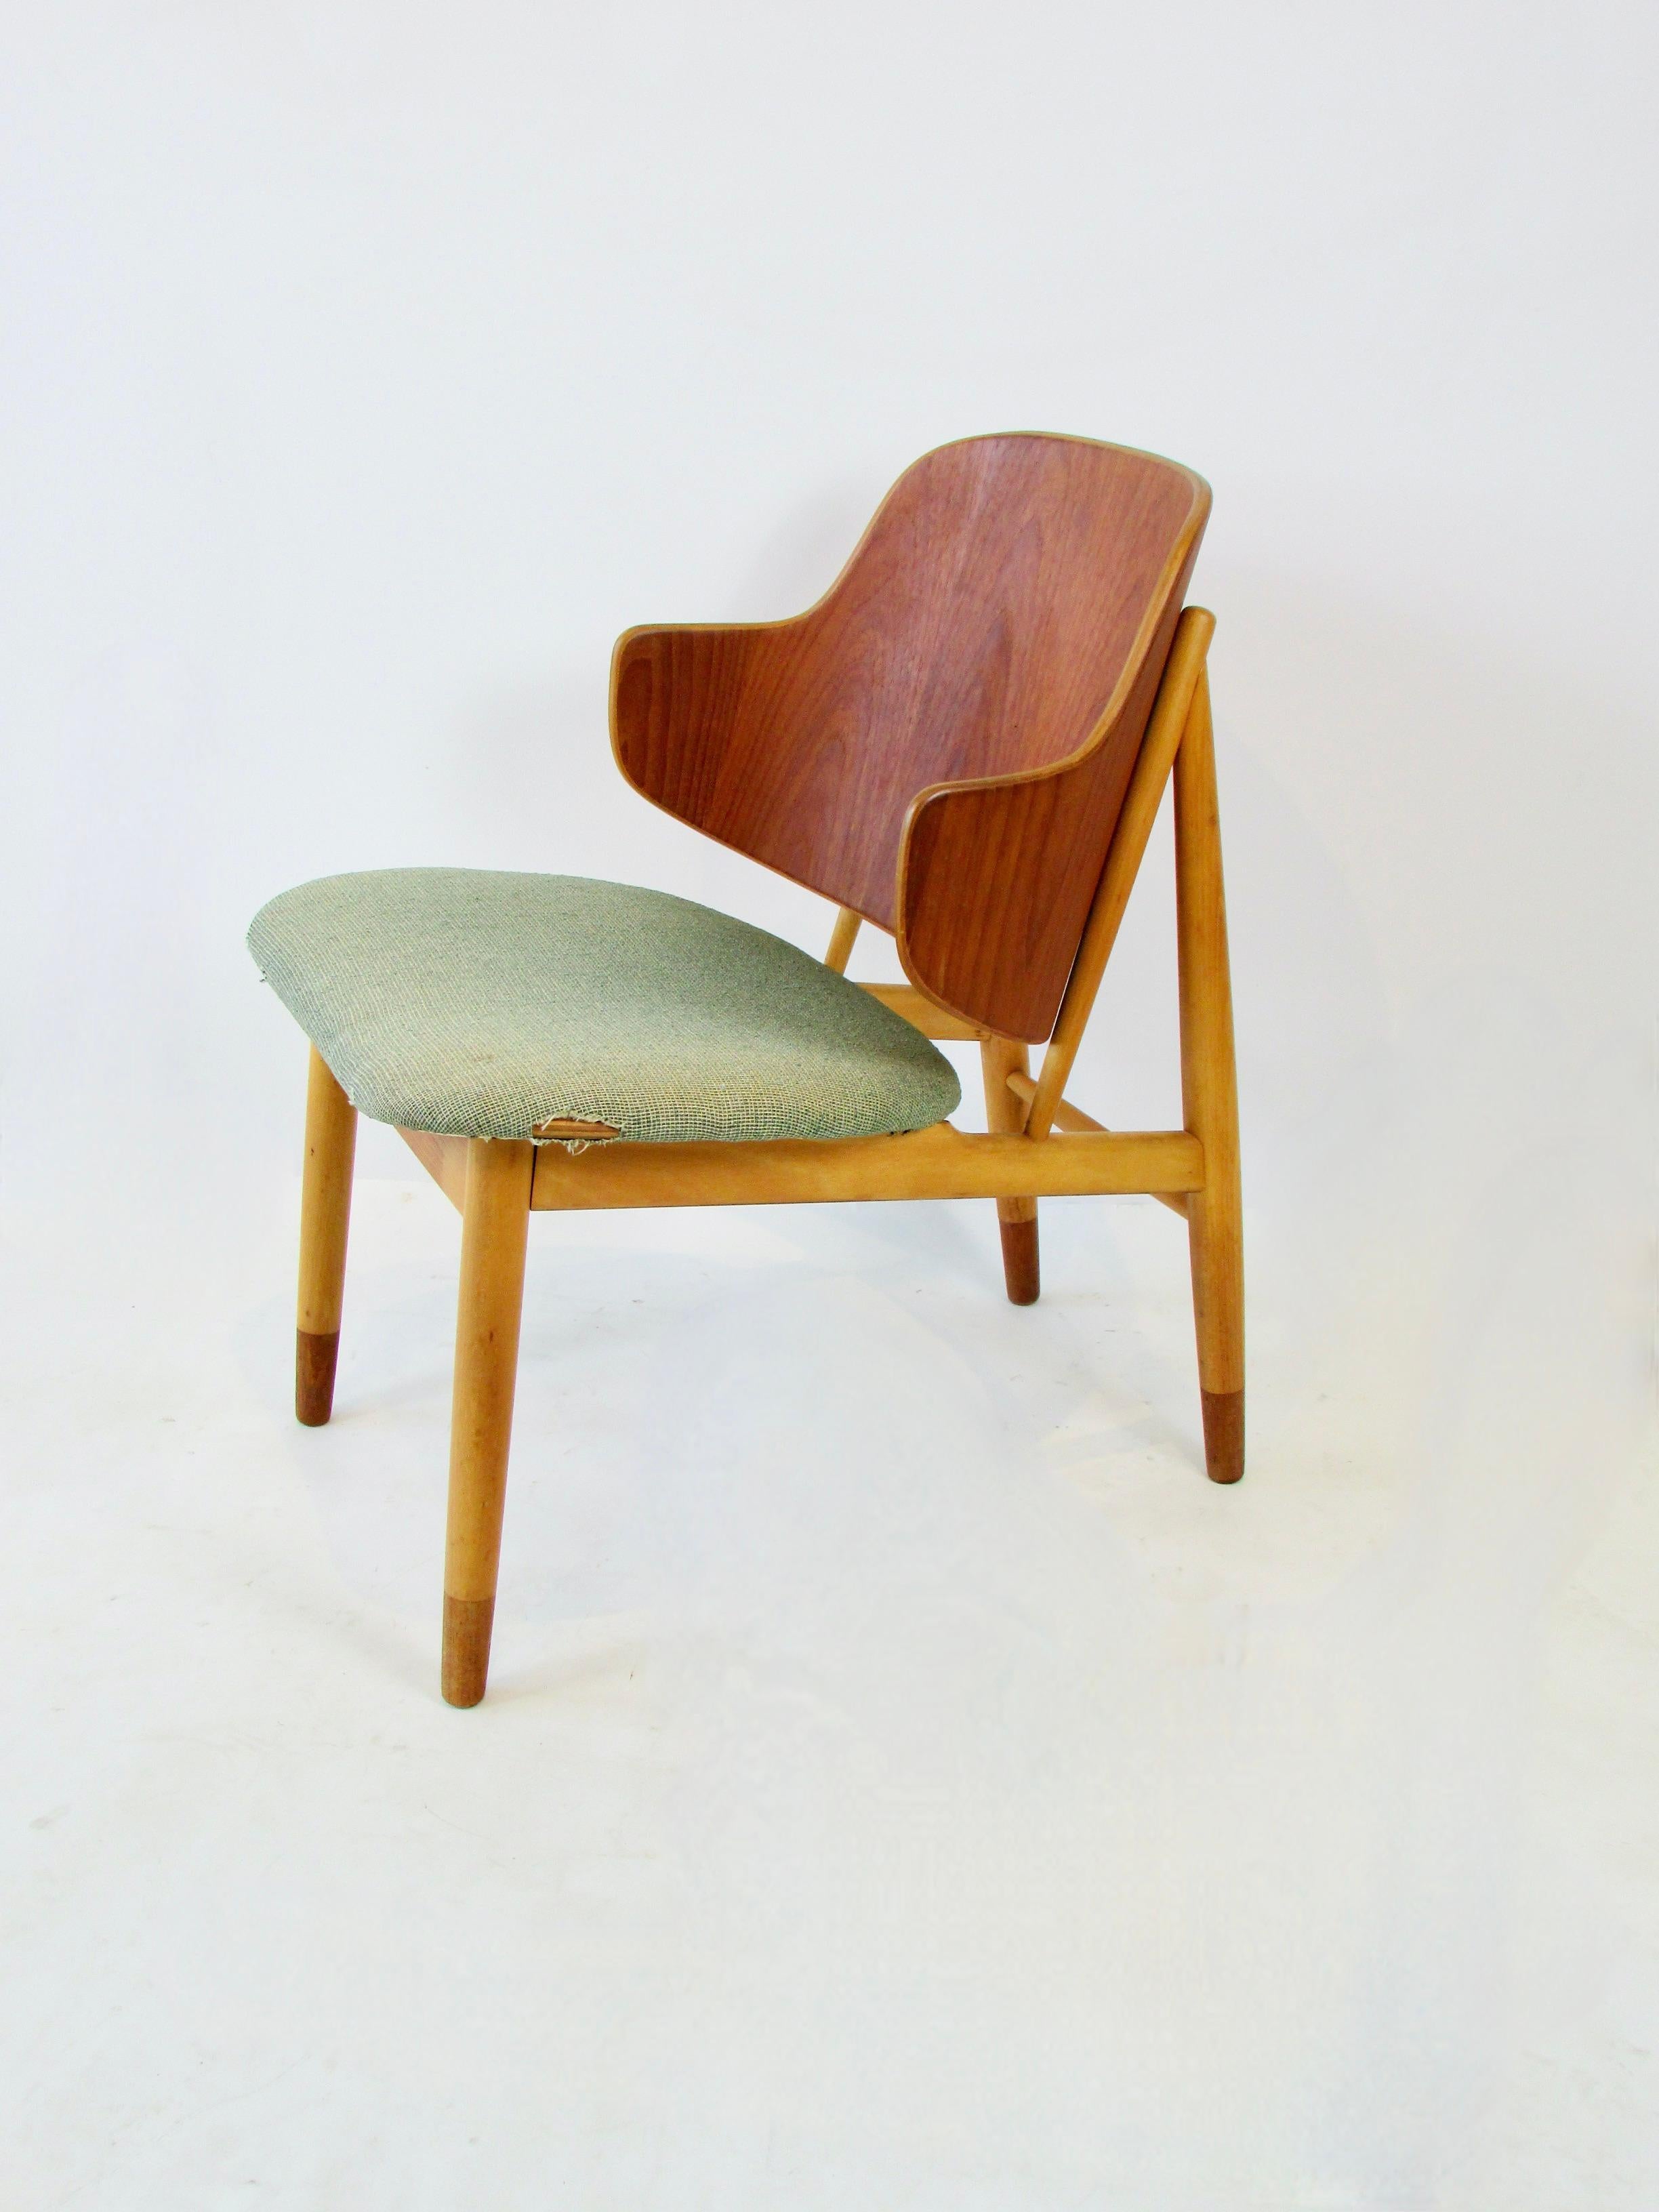 Teak Ib Kofod-Larsen Penguin chair for Christiansen and Larsen Denmark 1955 For Sale